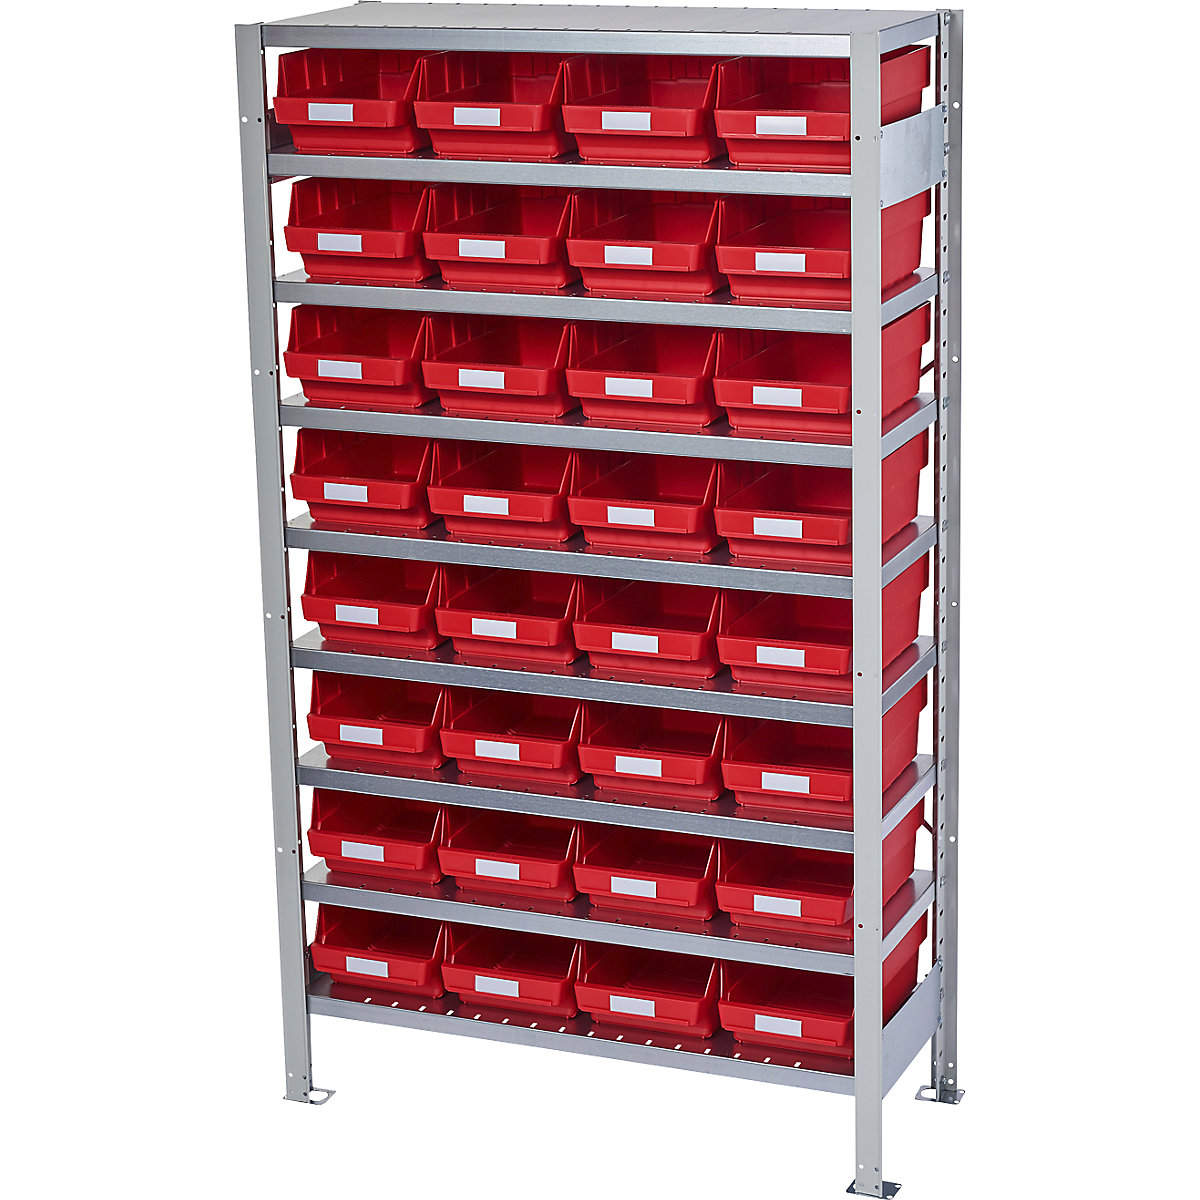 Összedugaszolós állvány dobozokkal – STEMO, állványmagasság 1790 mm, alapállvány, 400 mm mély, 32 piros doboz-26